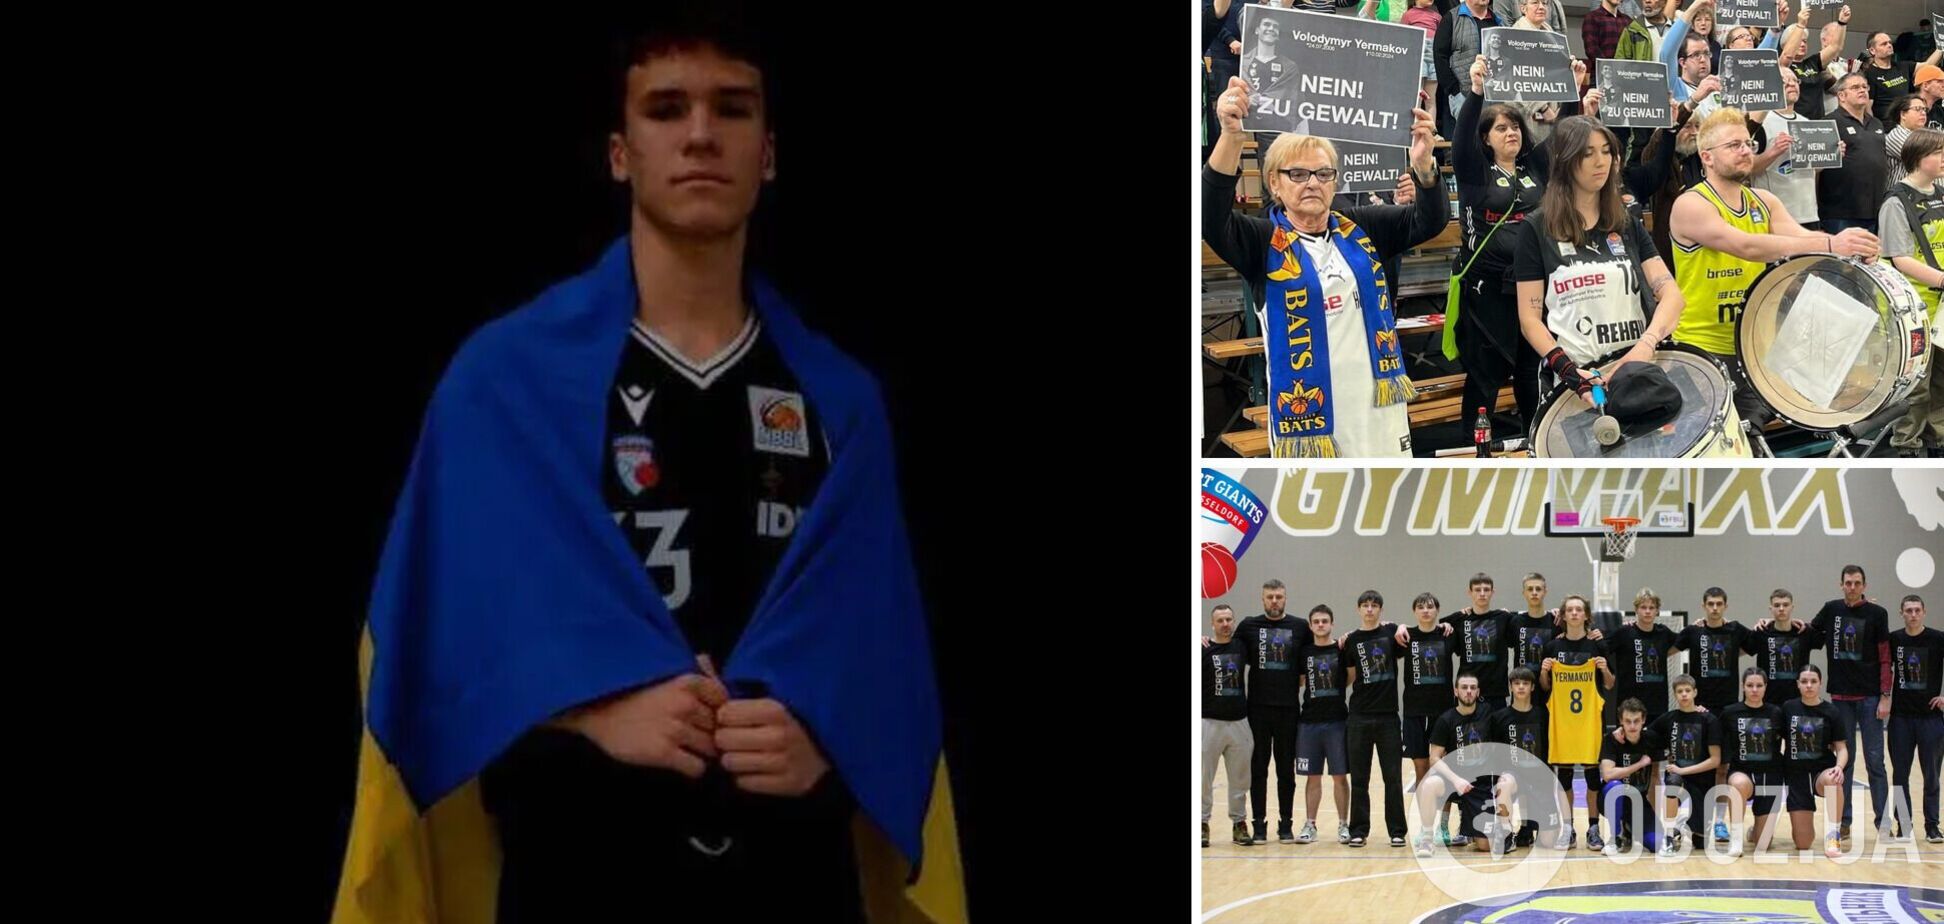 Вбивство 17-річного українського баскетболіста: у Німеччині зворушливо вшанували пам'ять Володимира Єрмакова. Відео